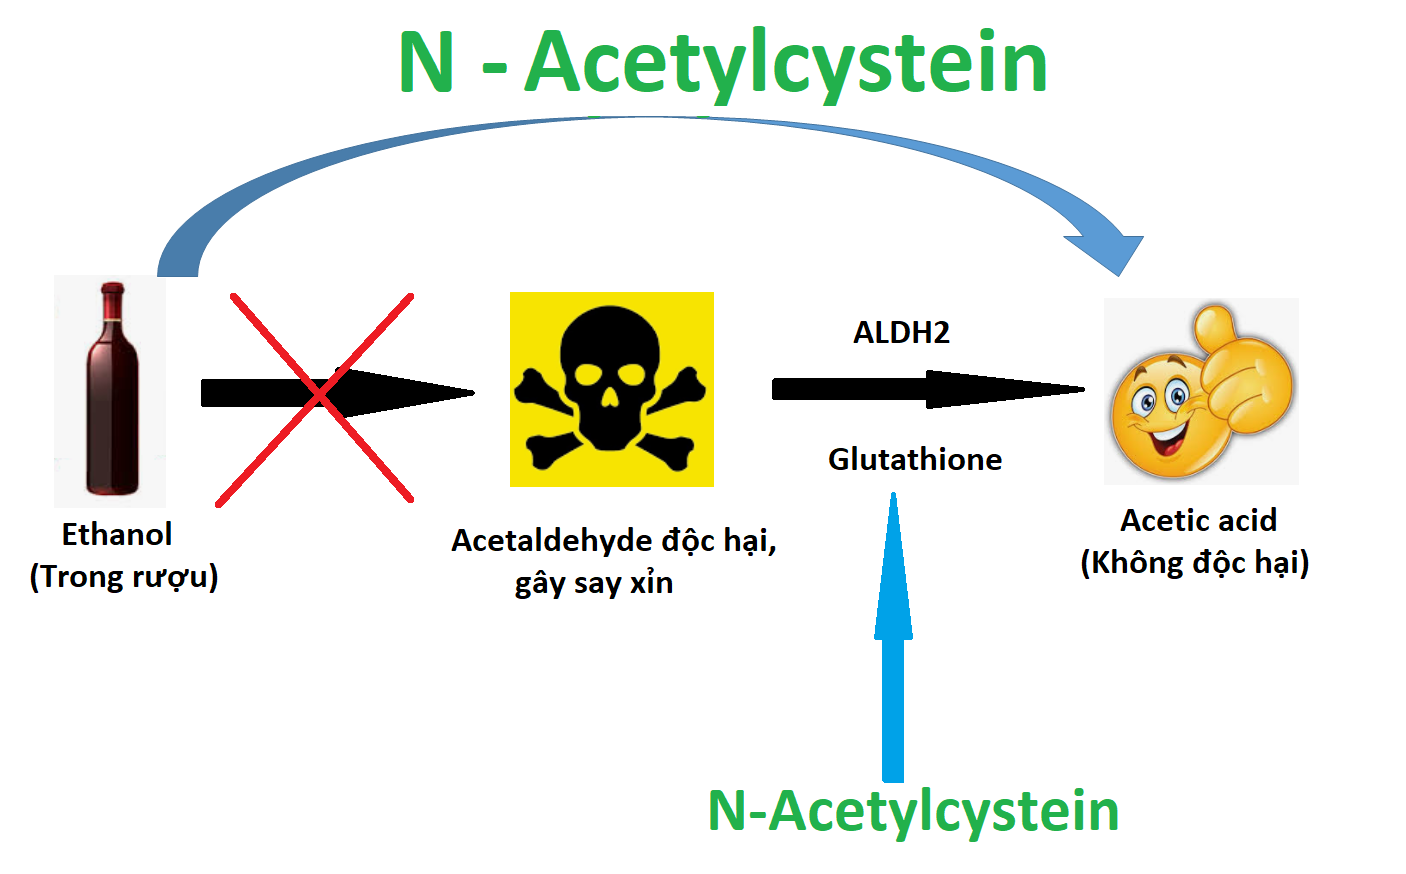  N-Acetylcysteine giúp cơ thể chuyển hóa rượu thành chất không độc hại 